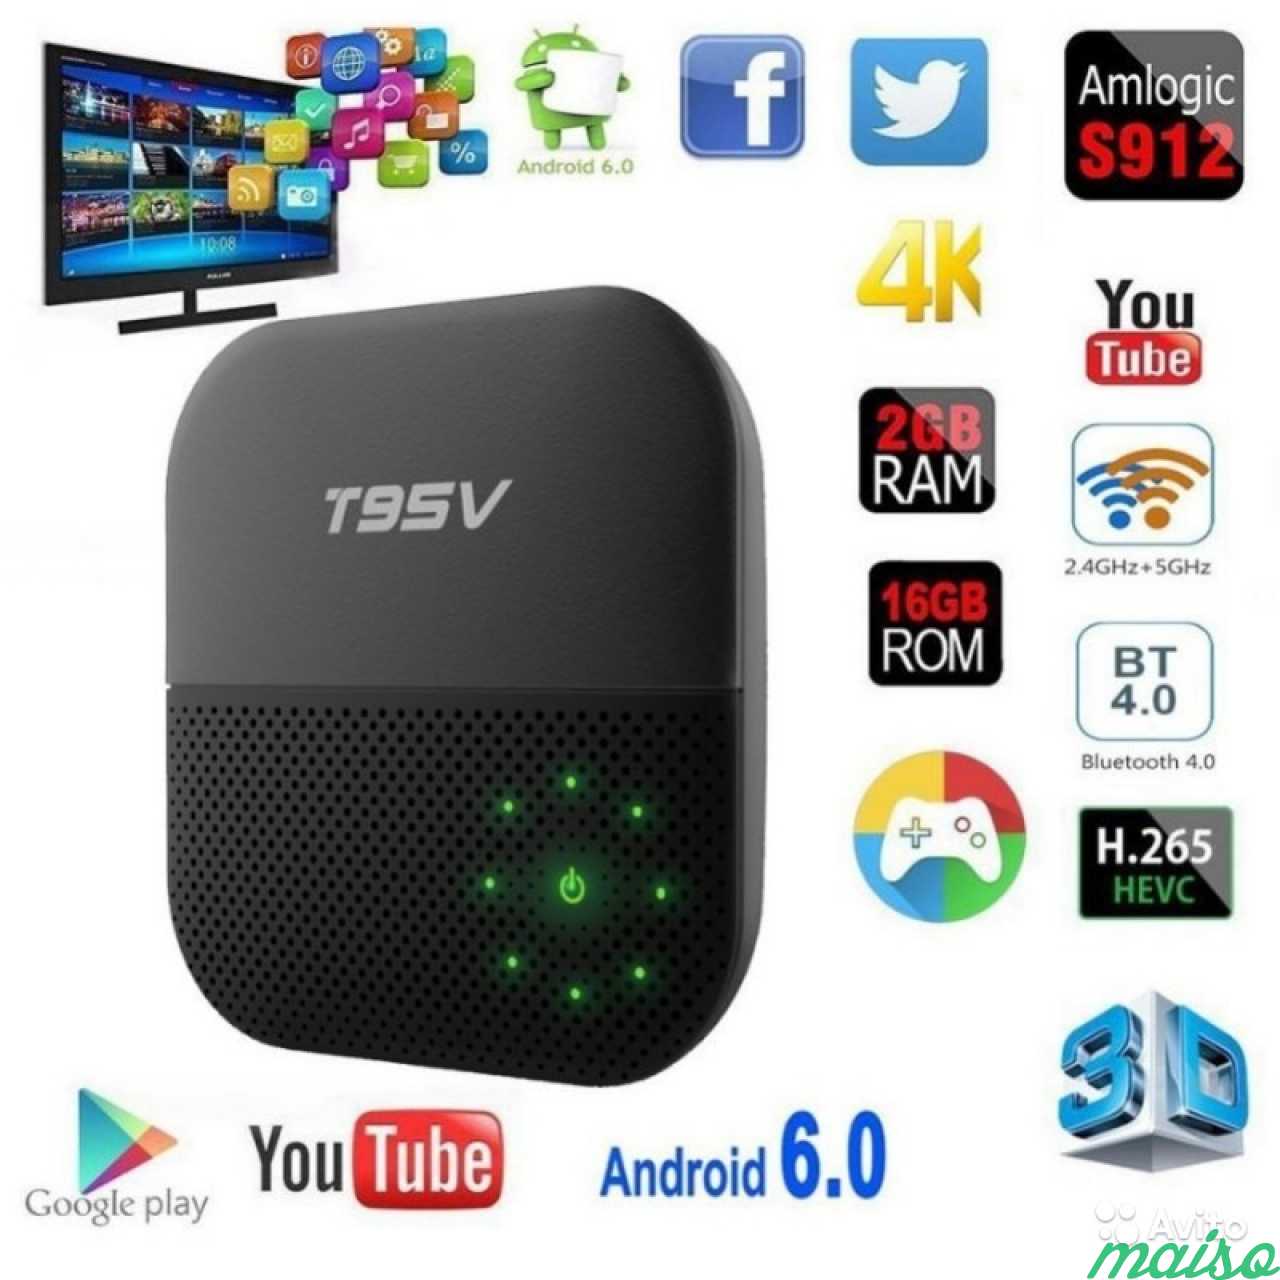 Приставки smart тв купить. Приставка t95 для Smart TV. Android смарт ТВ приставки VONTAR. Медиаплеер Sunvell t95v 2gb+16gb. Wr330 IPTV приставка.